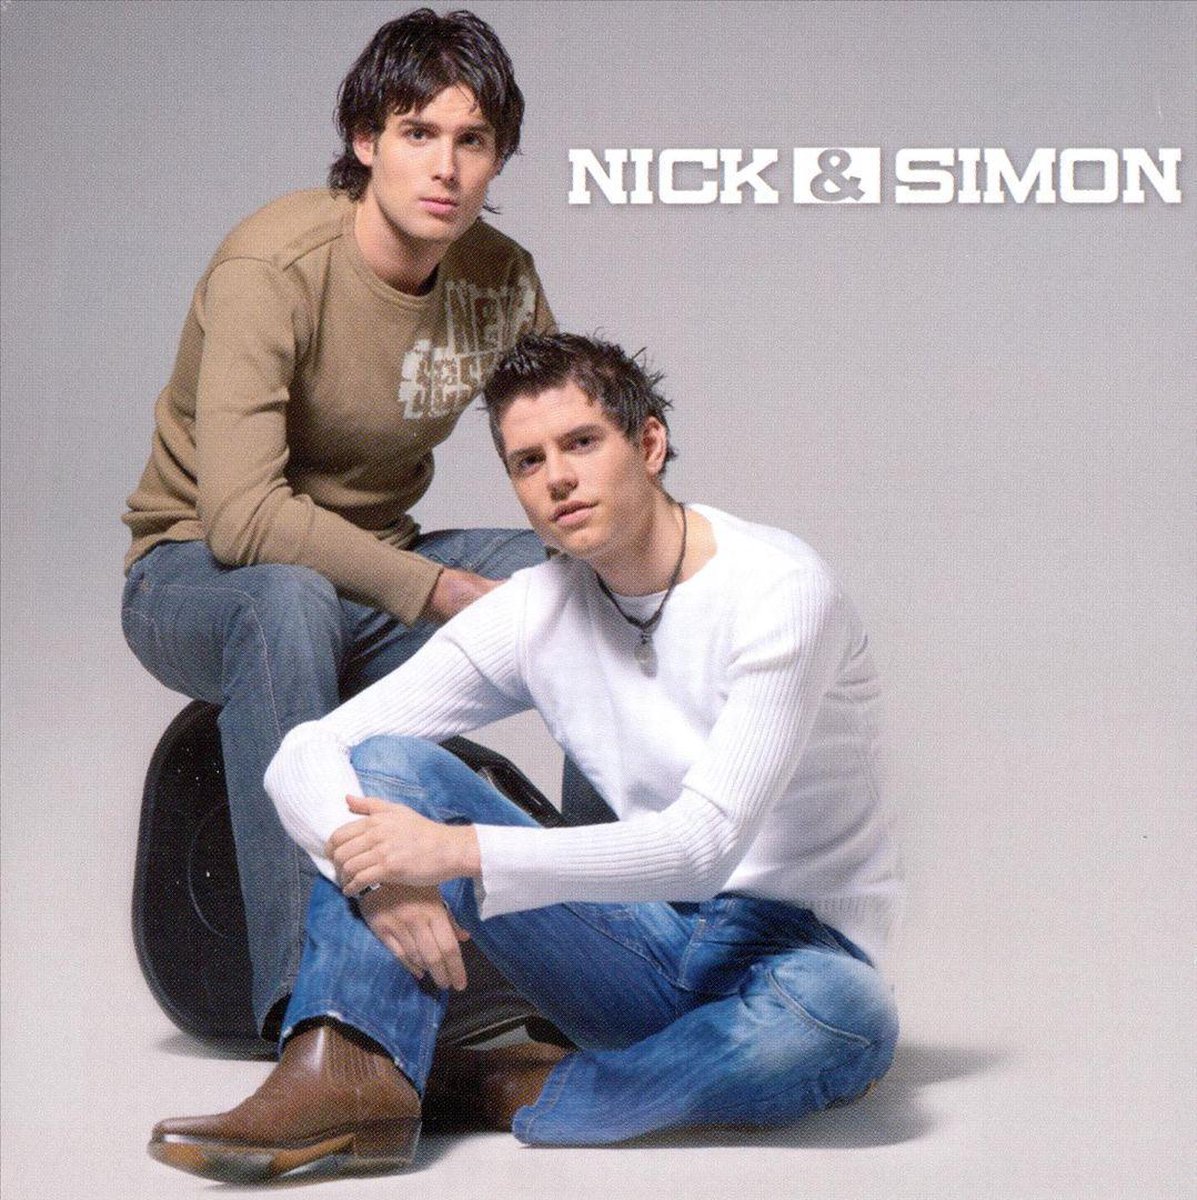 Nick & Simon - Nick & Simon - Nick & Simon